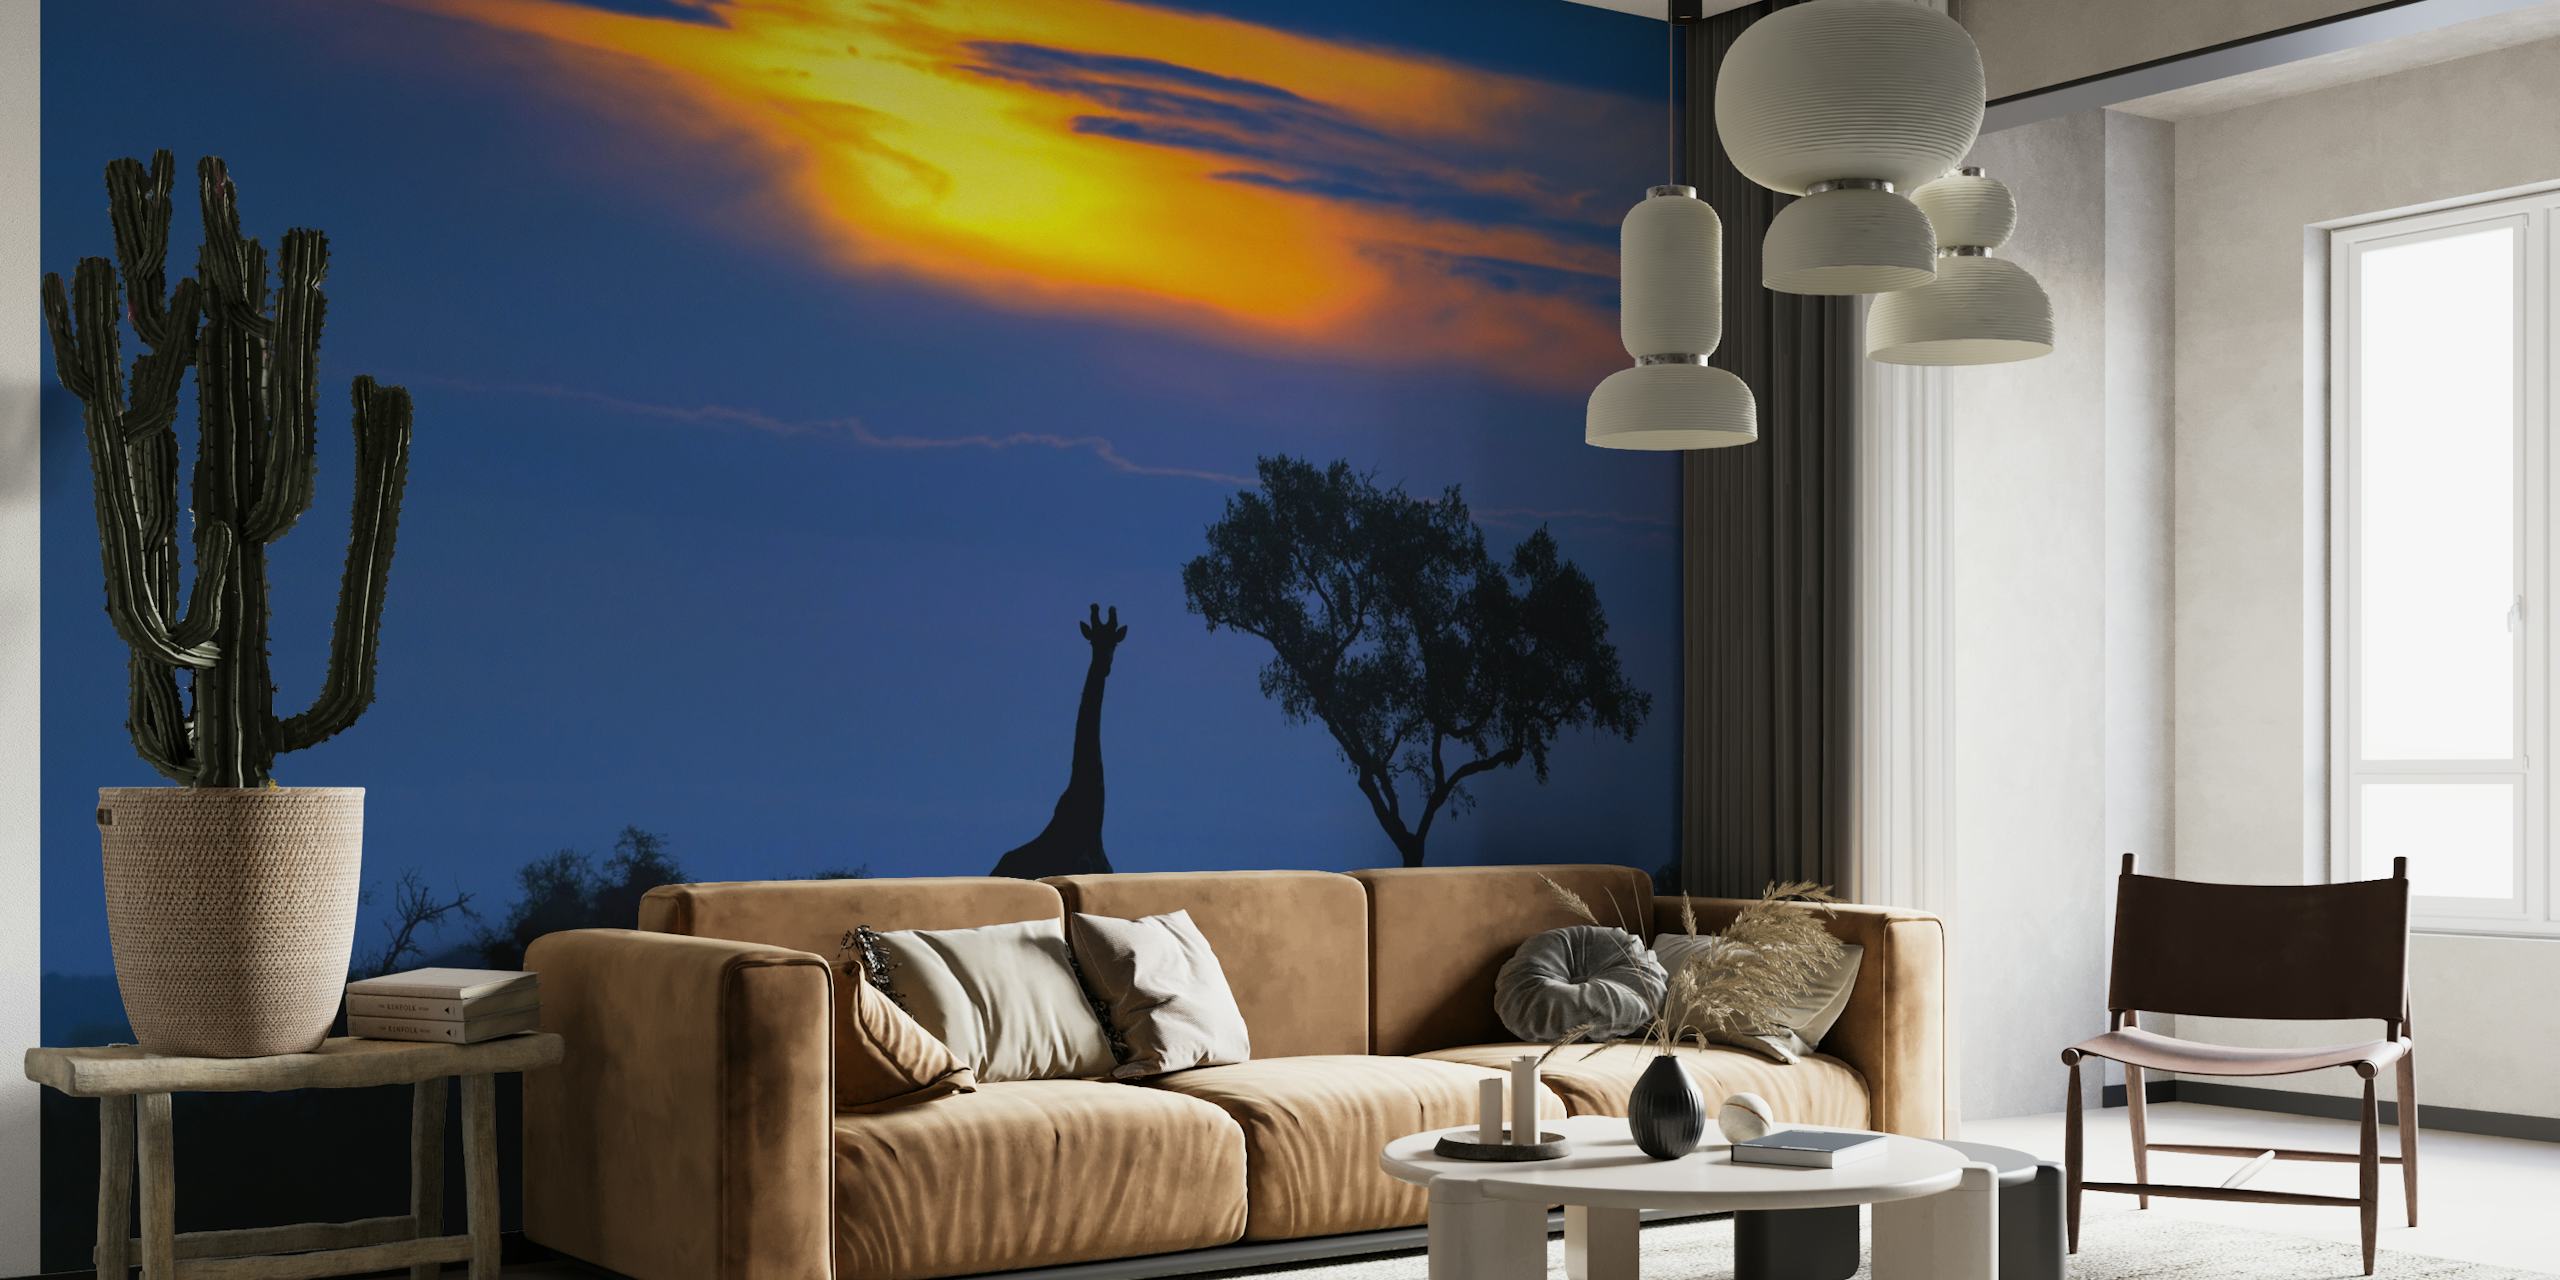 Girafsilhouet tegen een levendige muurschildering bij zonsondergang